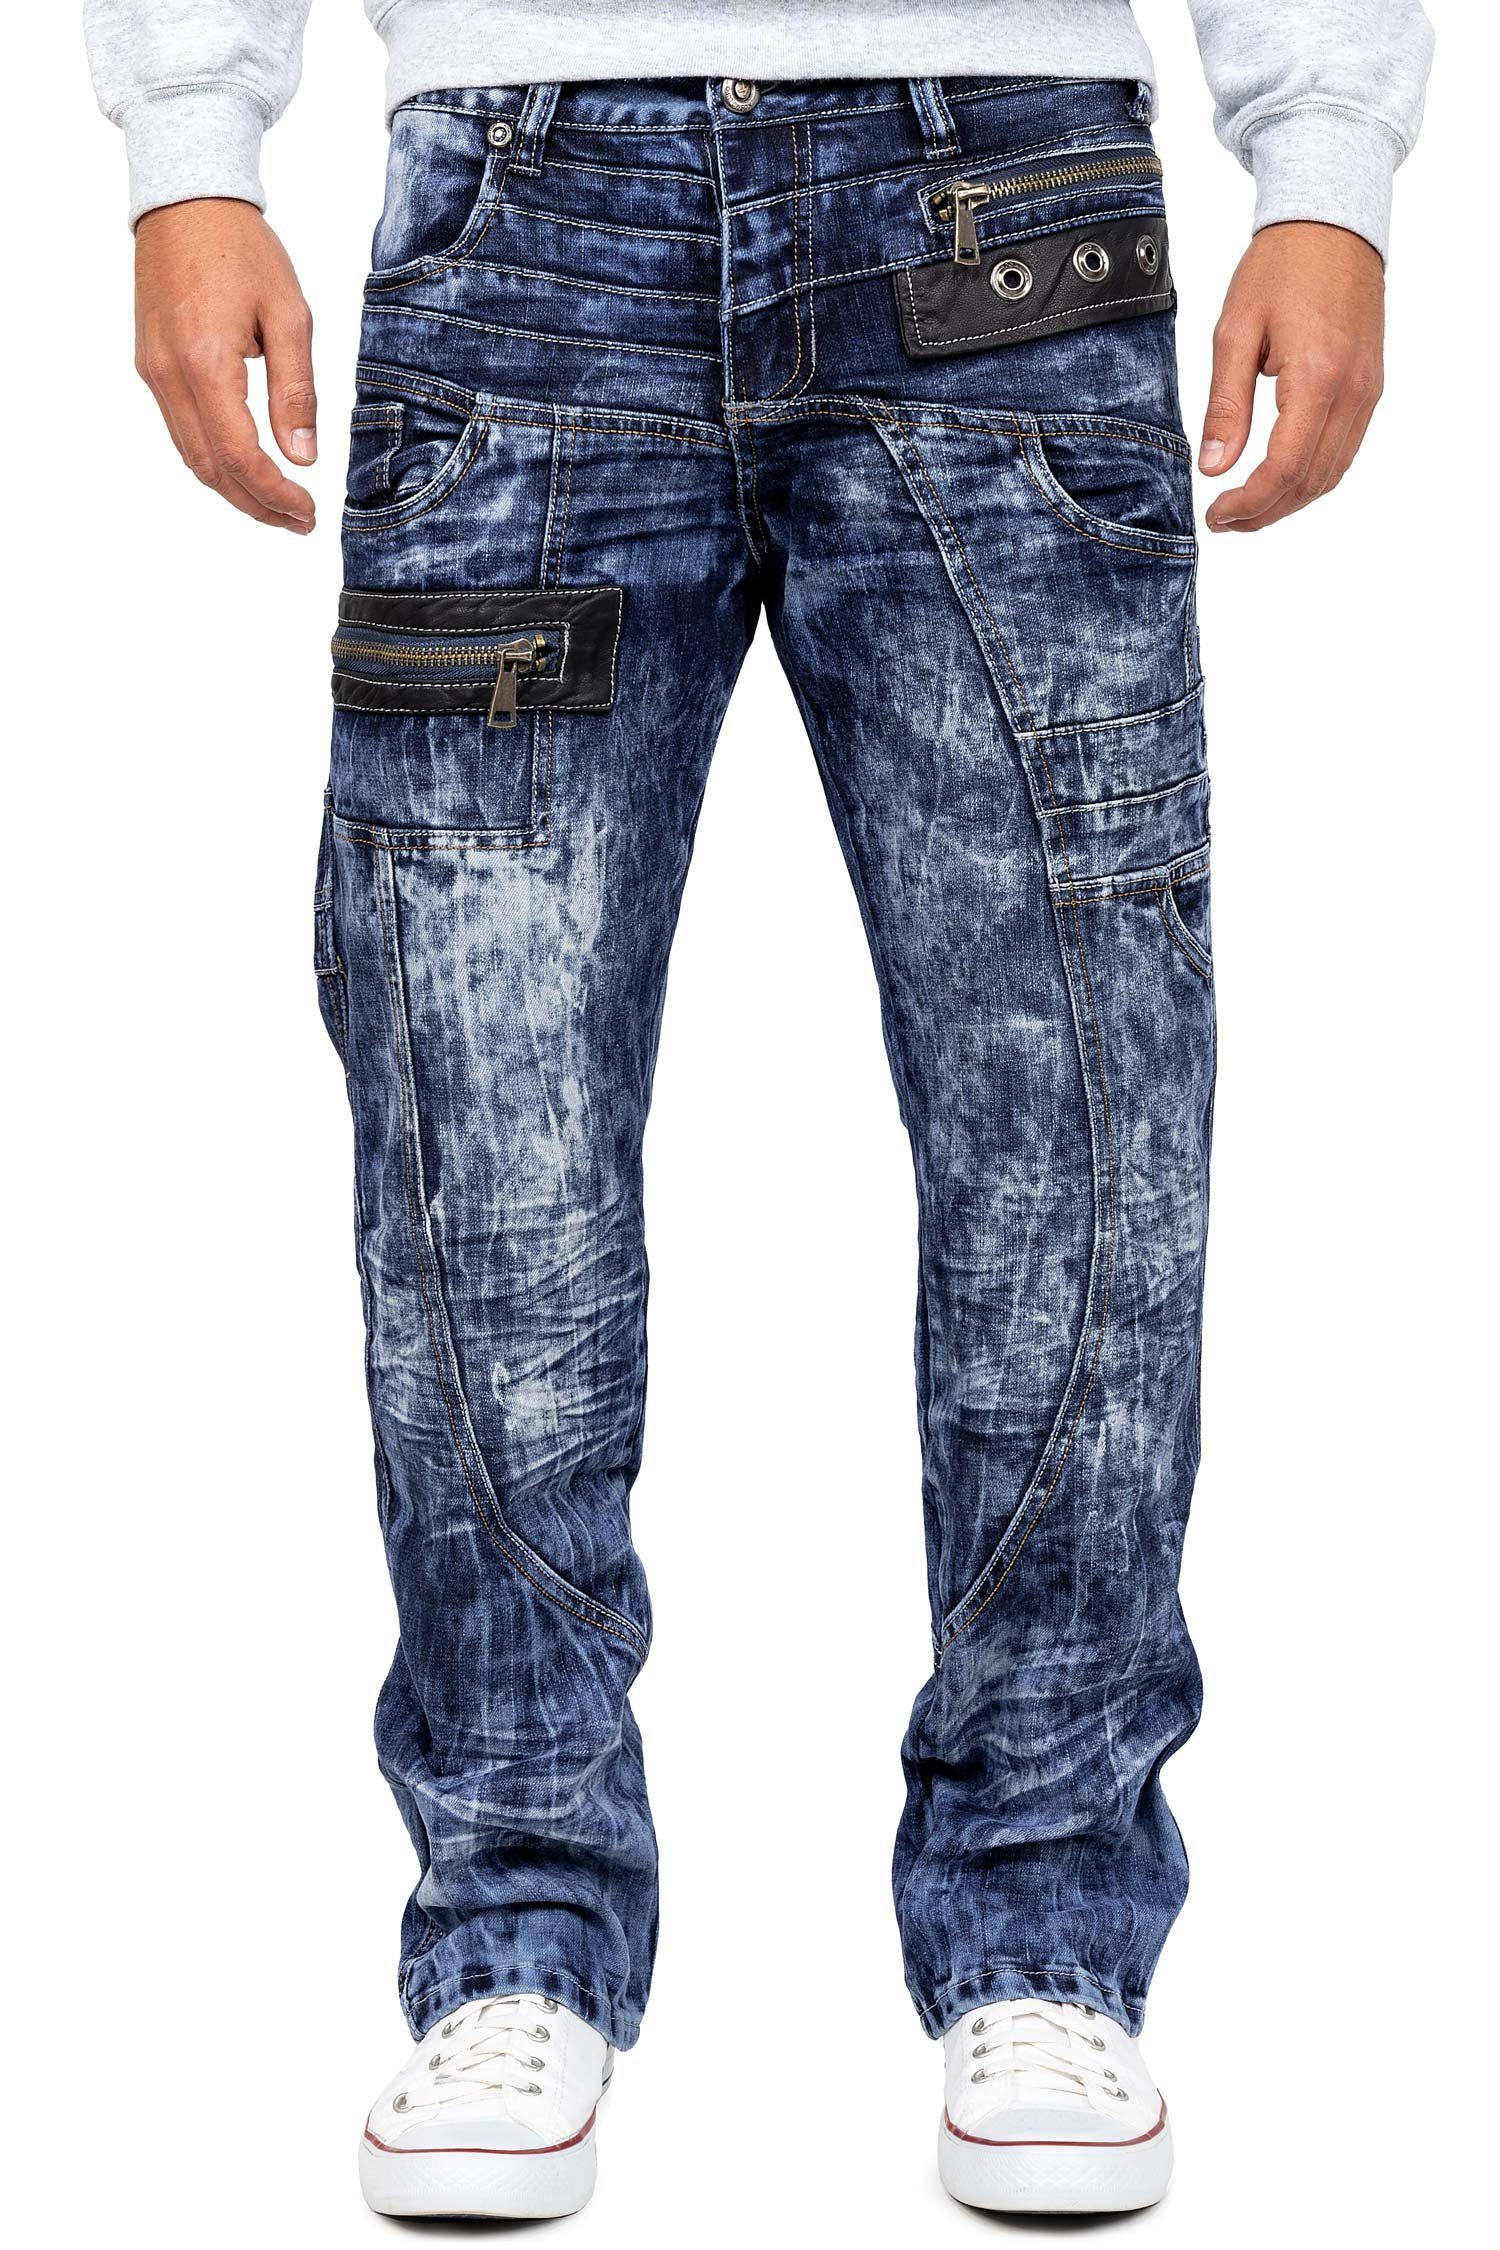 Kosmo Lupo 5-Pocket-Jeans Auffällige Herren Hose BA-KM012 Blau W32/L32 (1-tlg) extravagante Bluejeans mit Kunstleder Bereichen